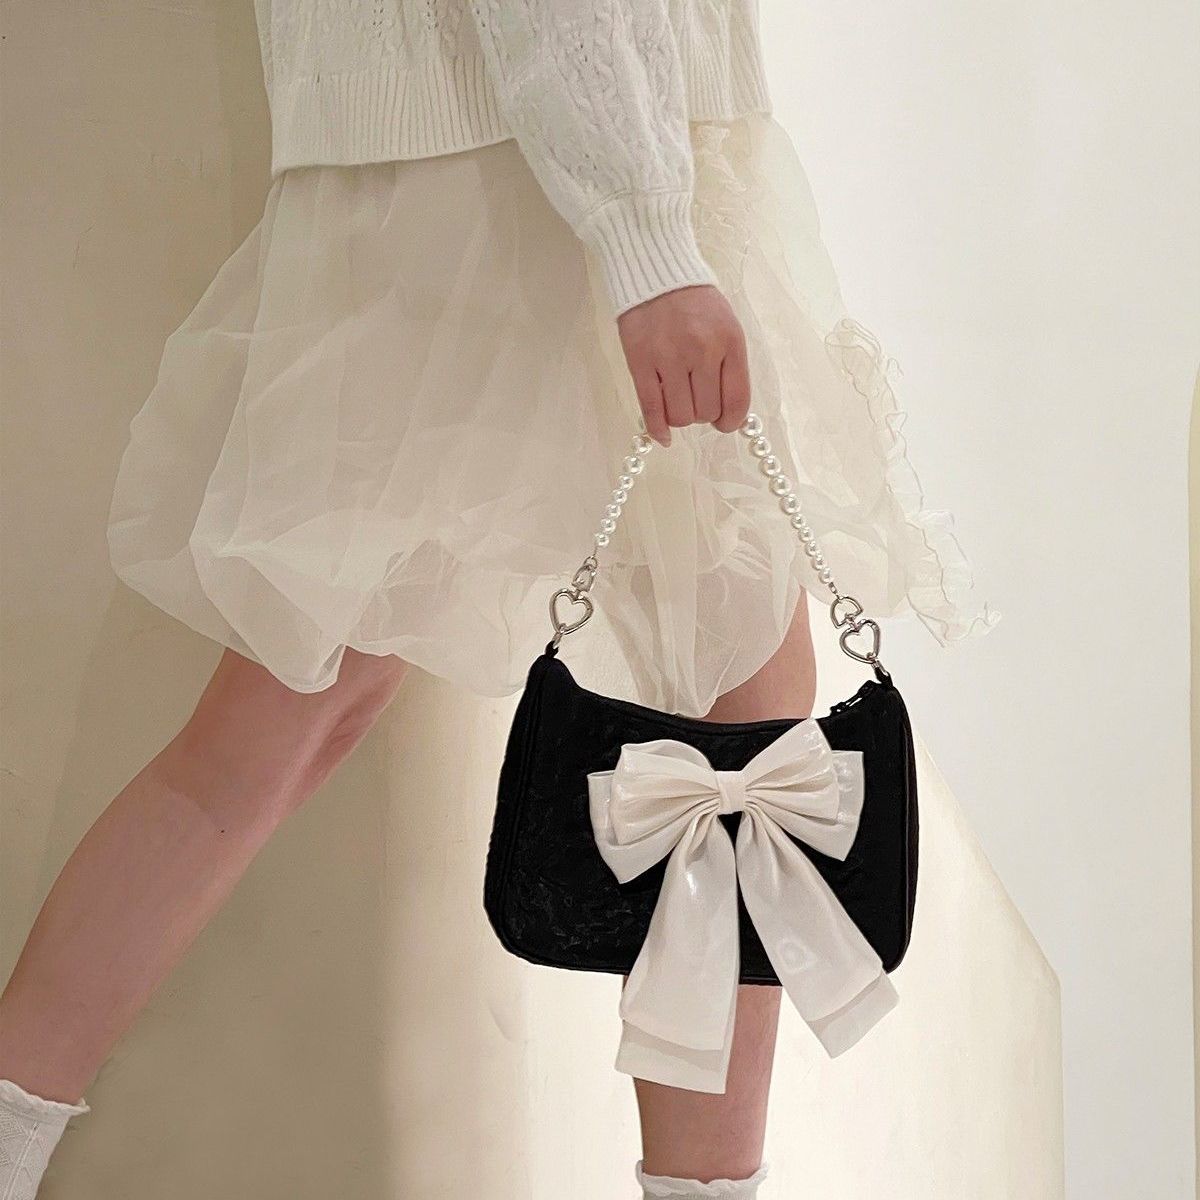 Buy Black Handbags for Women by Mark & Keith Online | Ajio.com